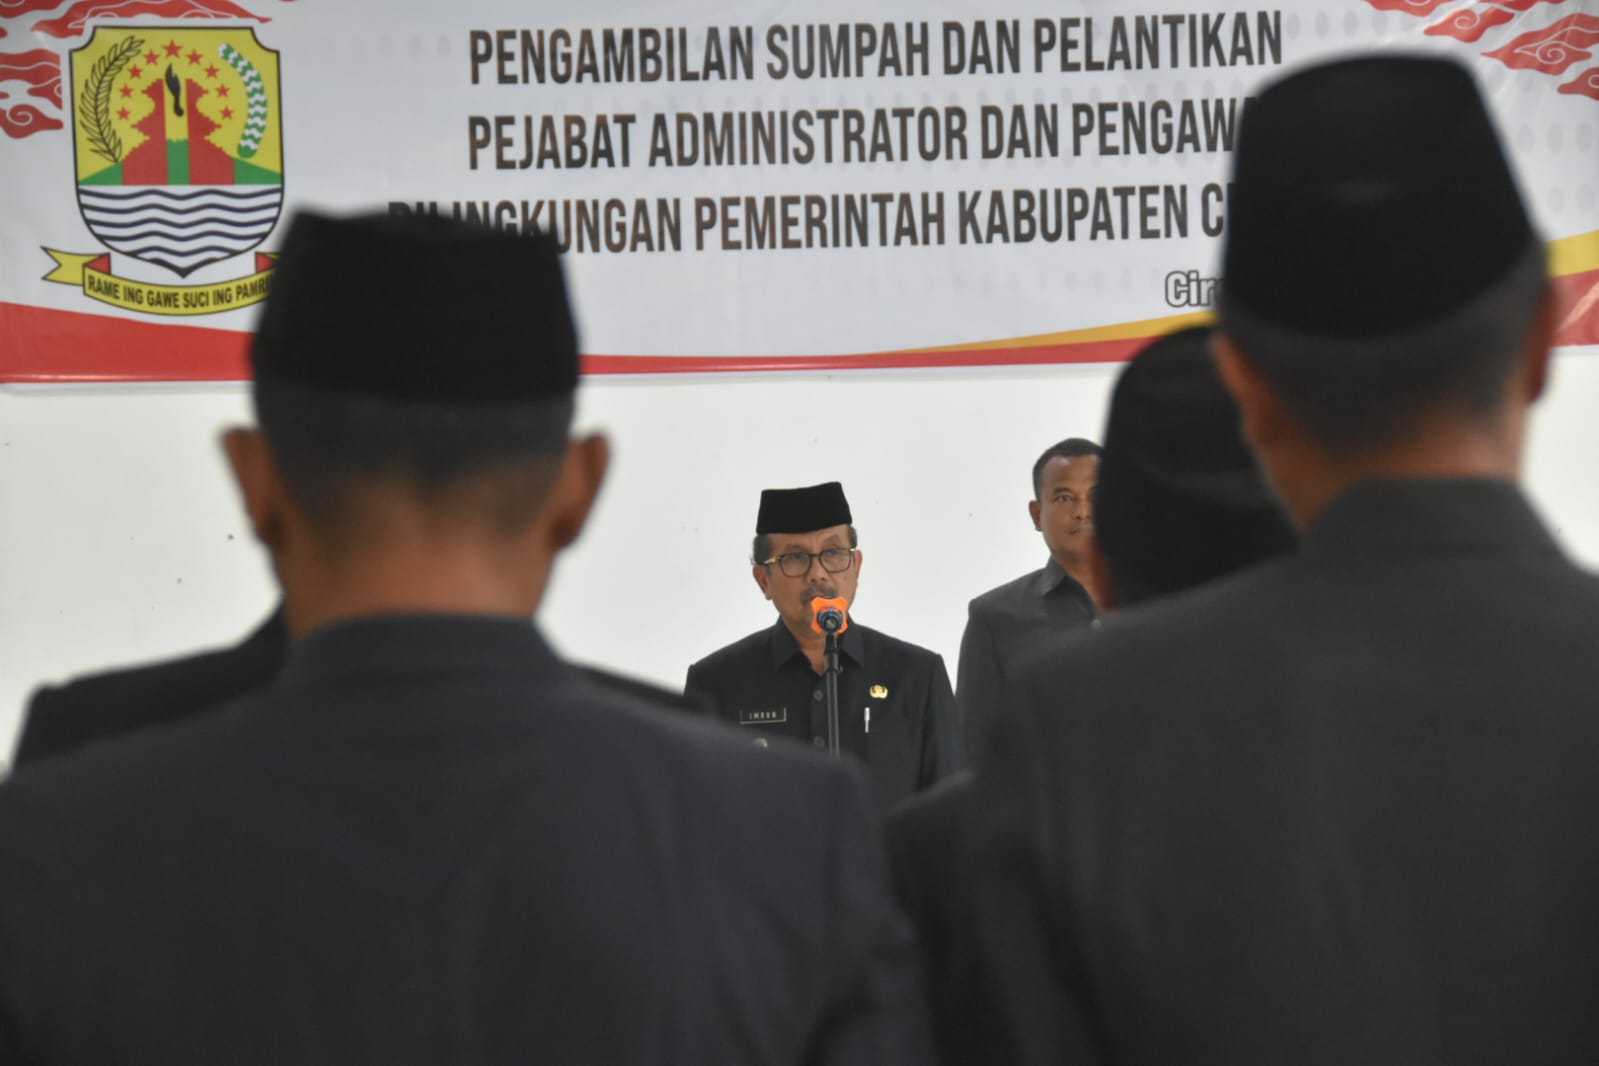 19 Pejabat Administrator dan Pengawas, Dilantik Bupati Cirebon